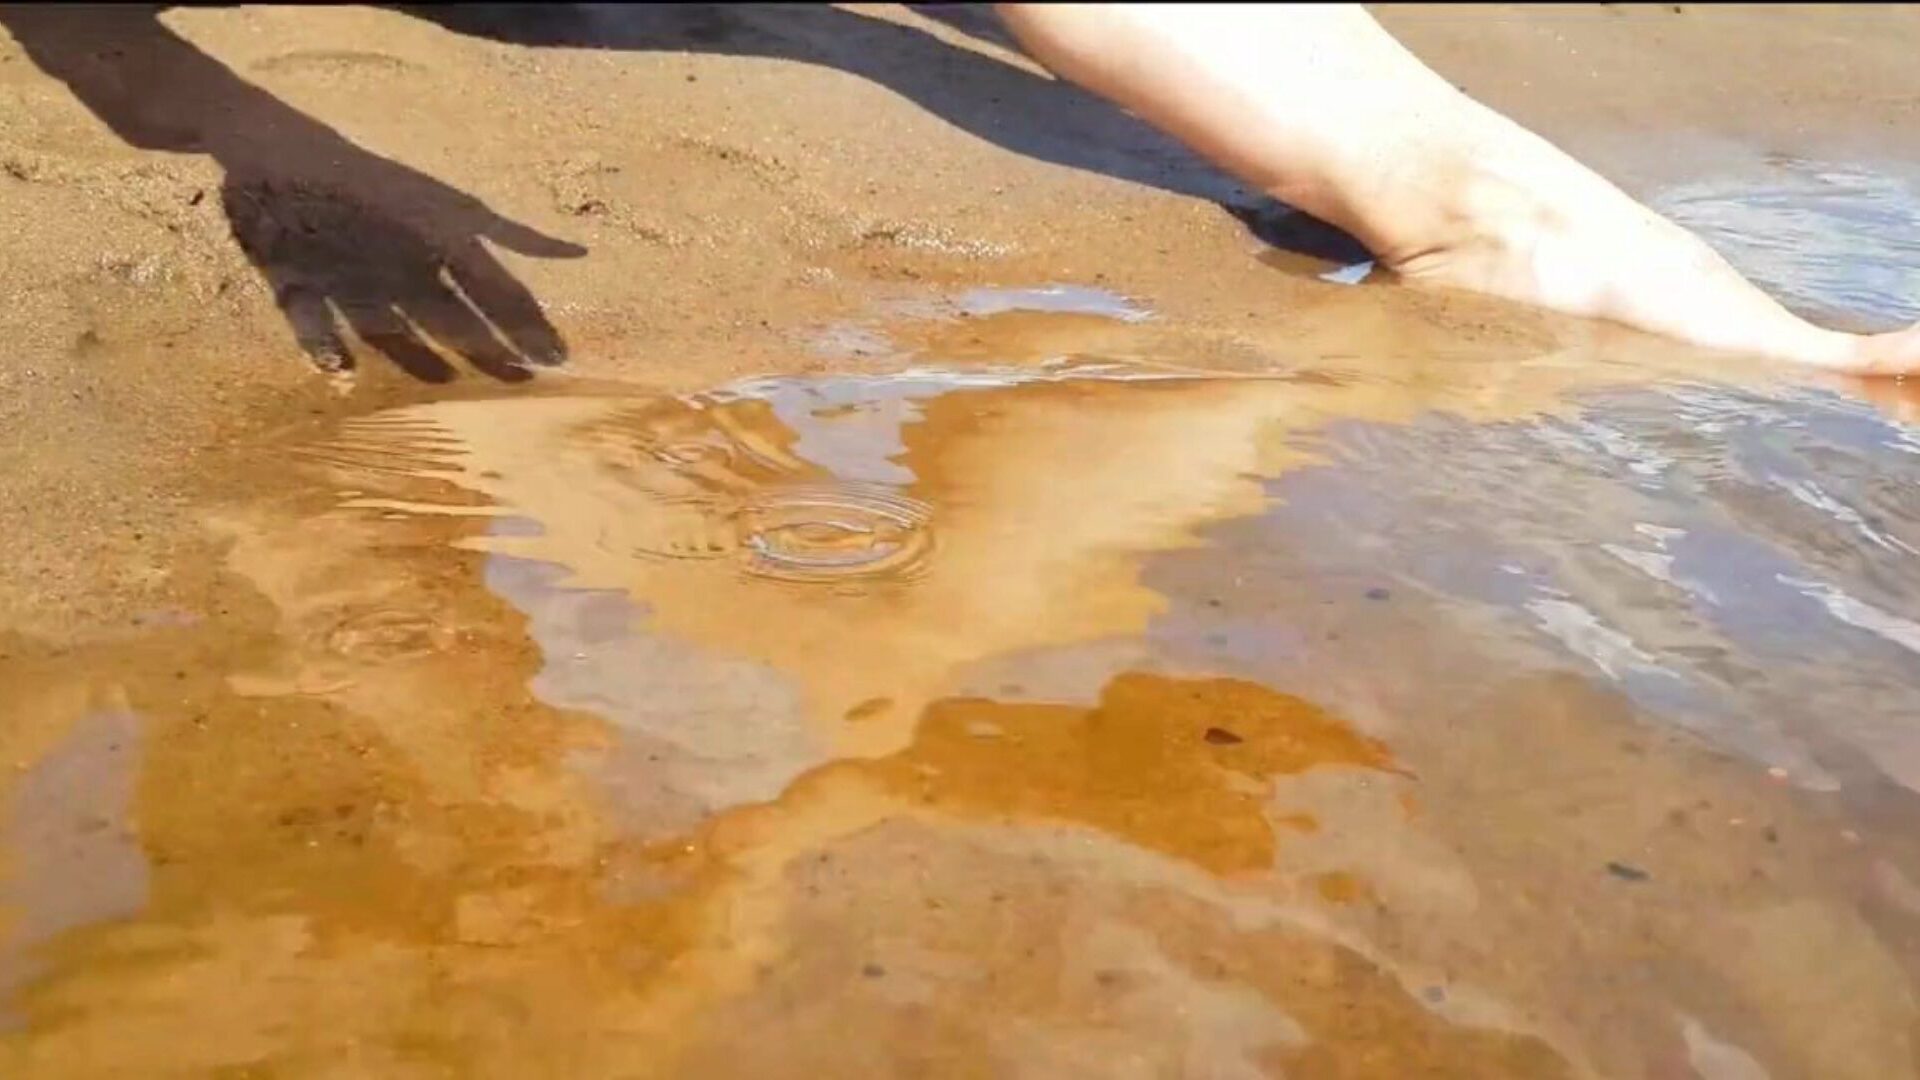 nastolatka palcuje się na publicznej plaży i dostaje naprawdę fajny orgazm - ciasna cipka playskitty ultra hd 4k